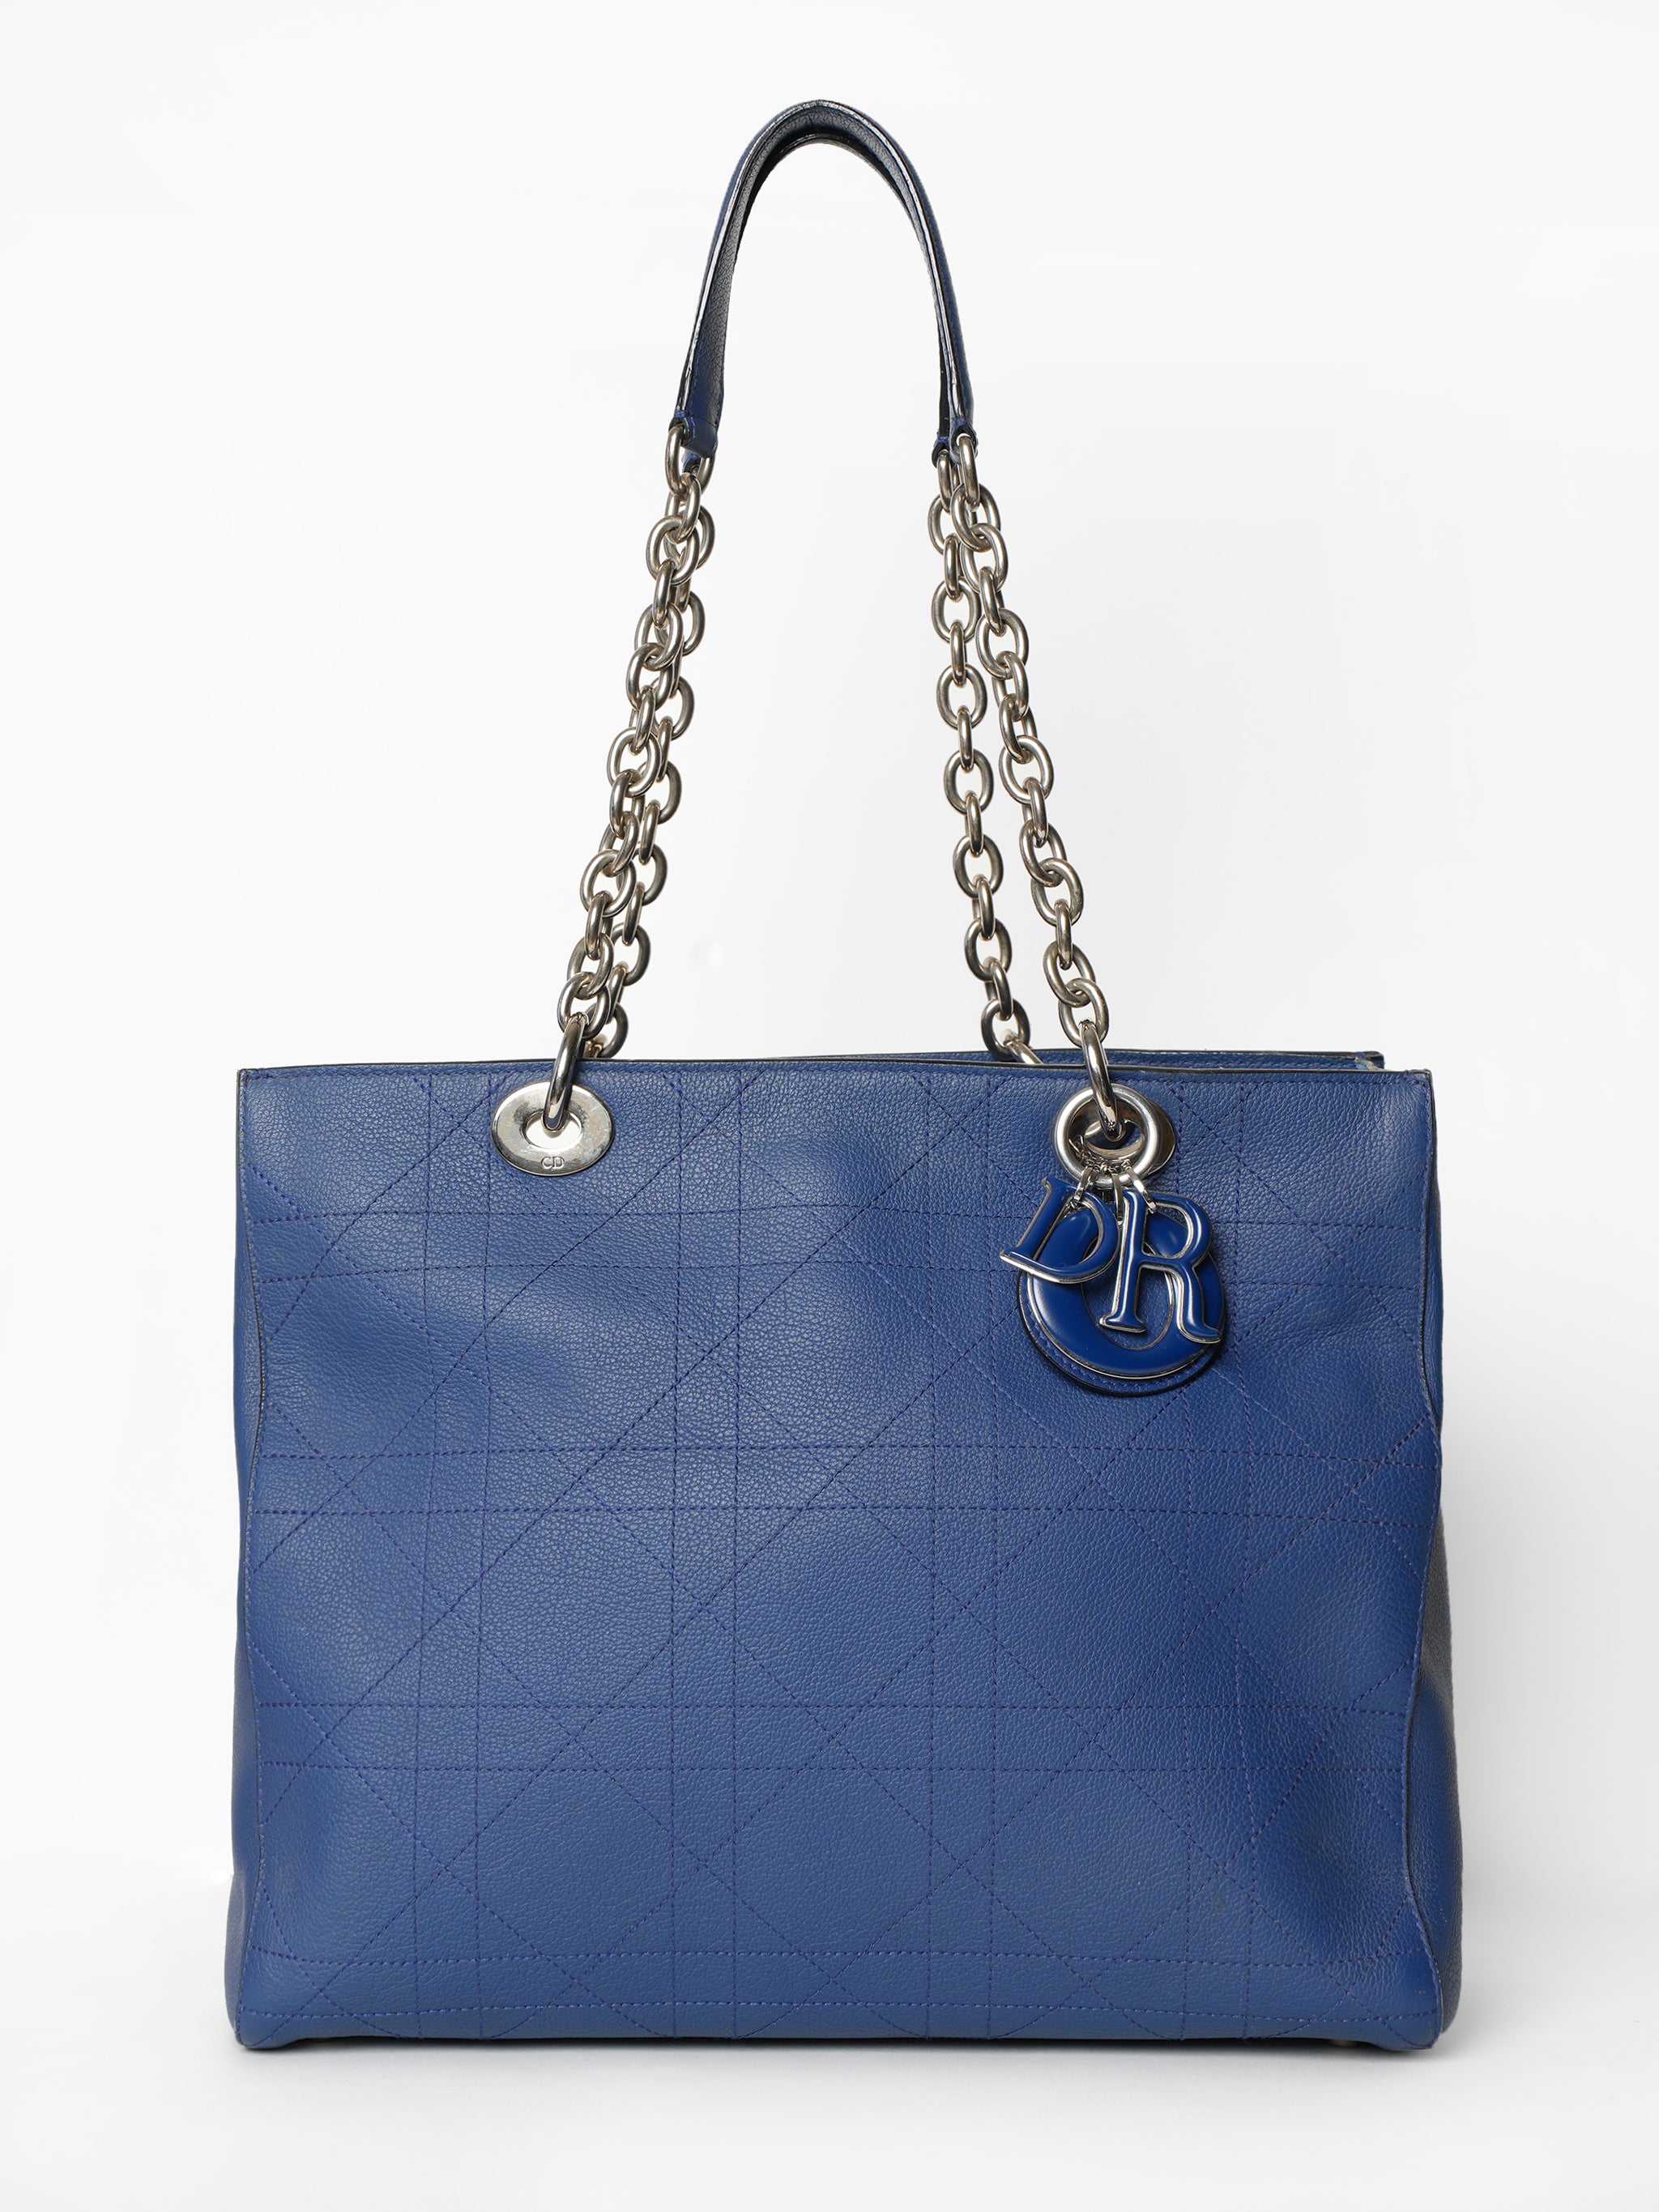 Christian Dior Blue Leather Shoulder Bag